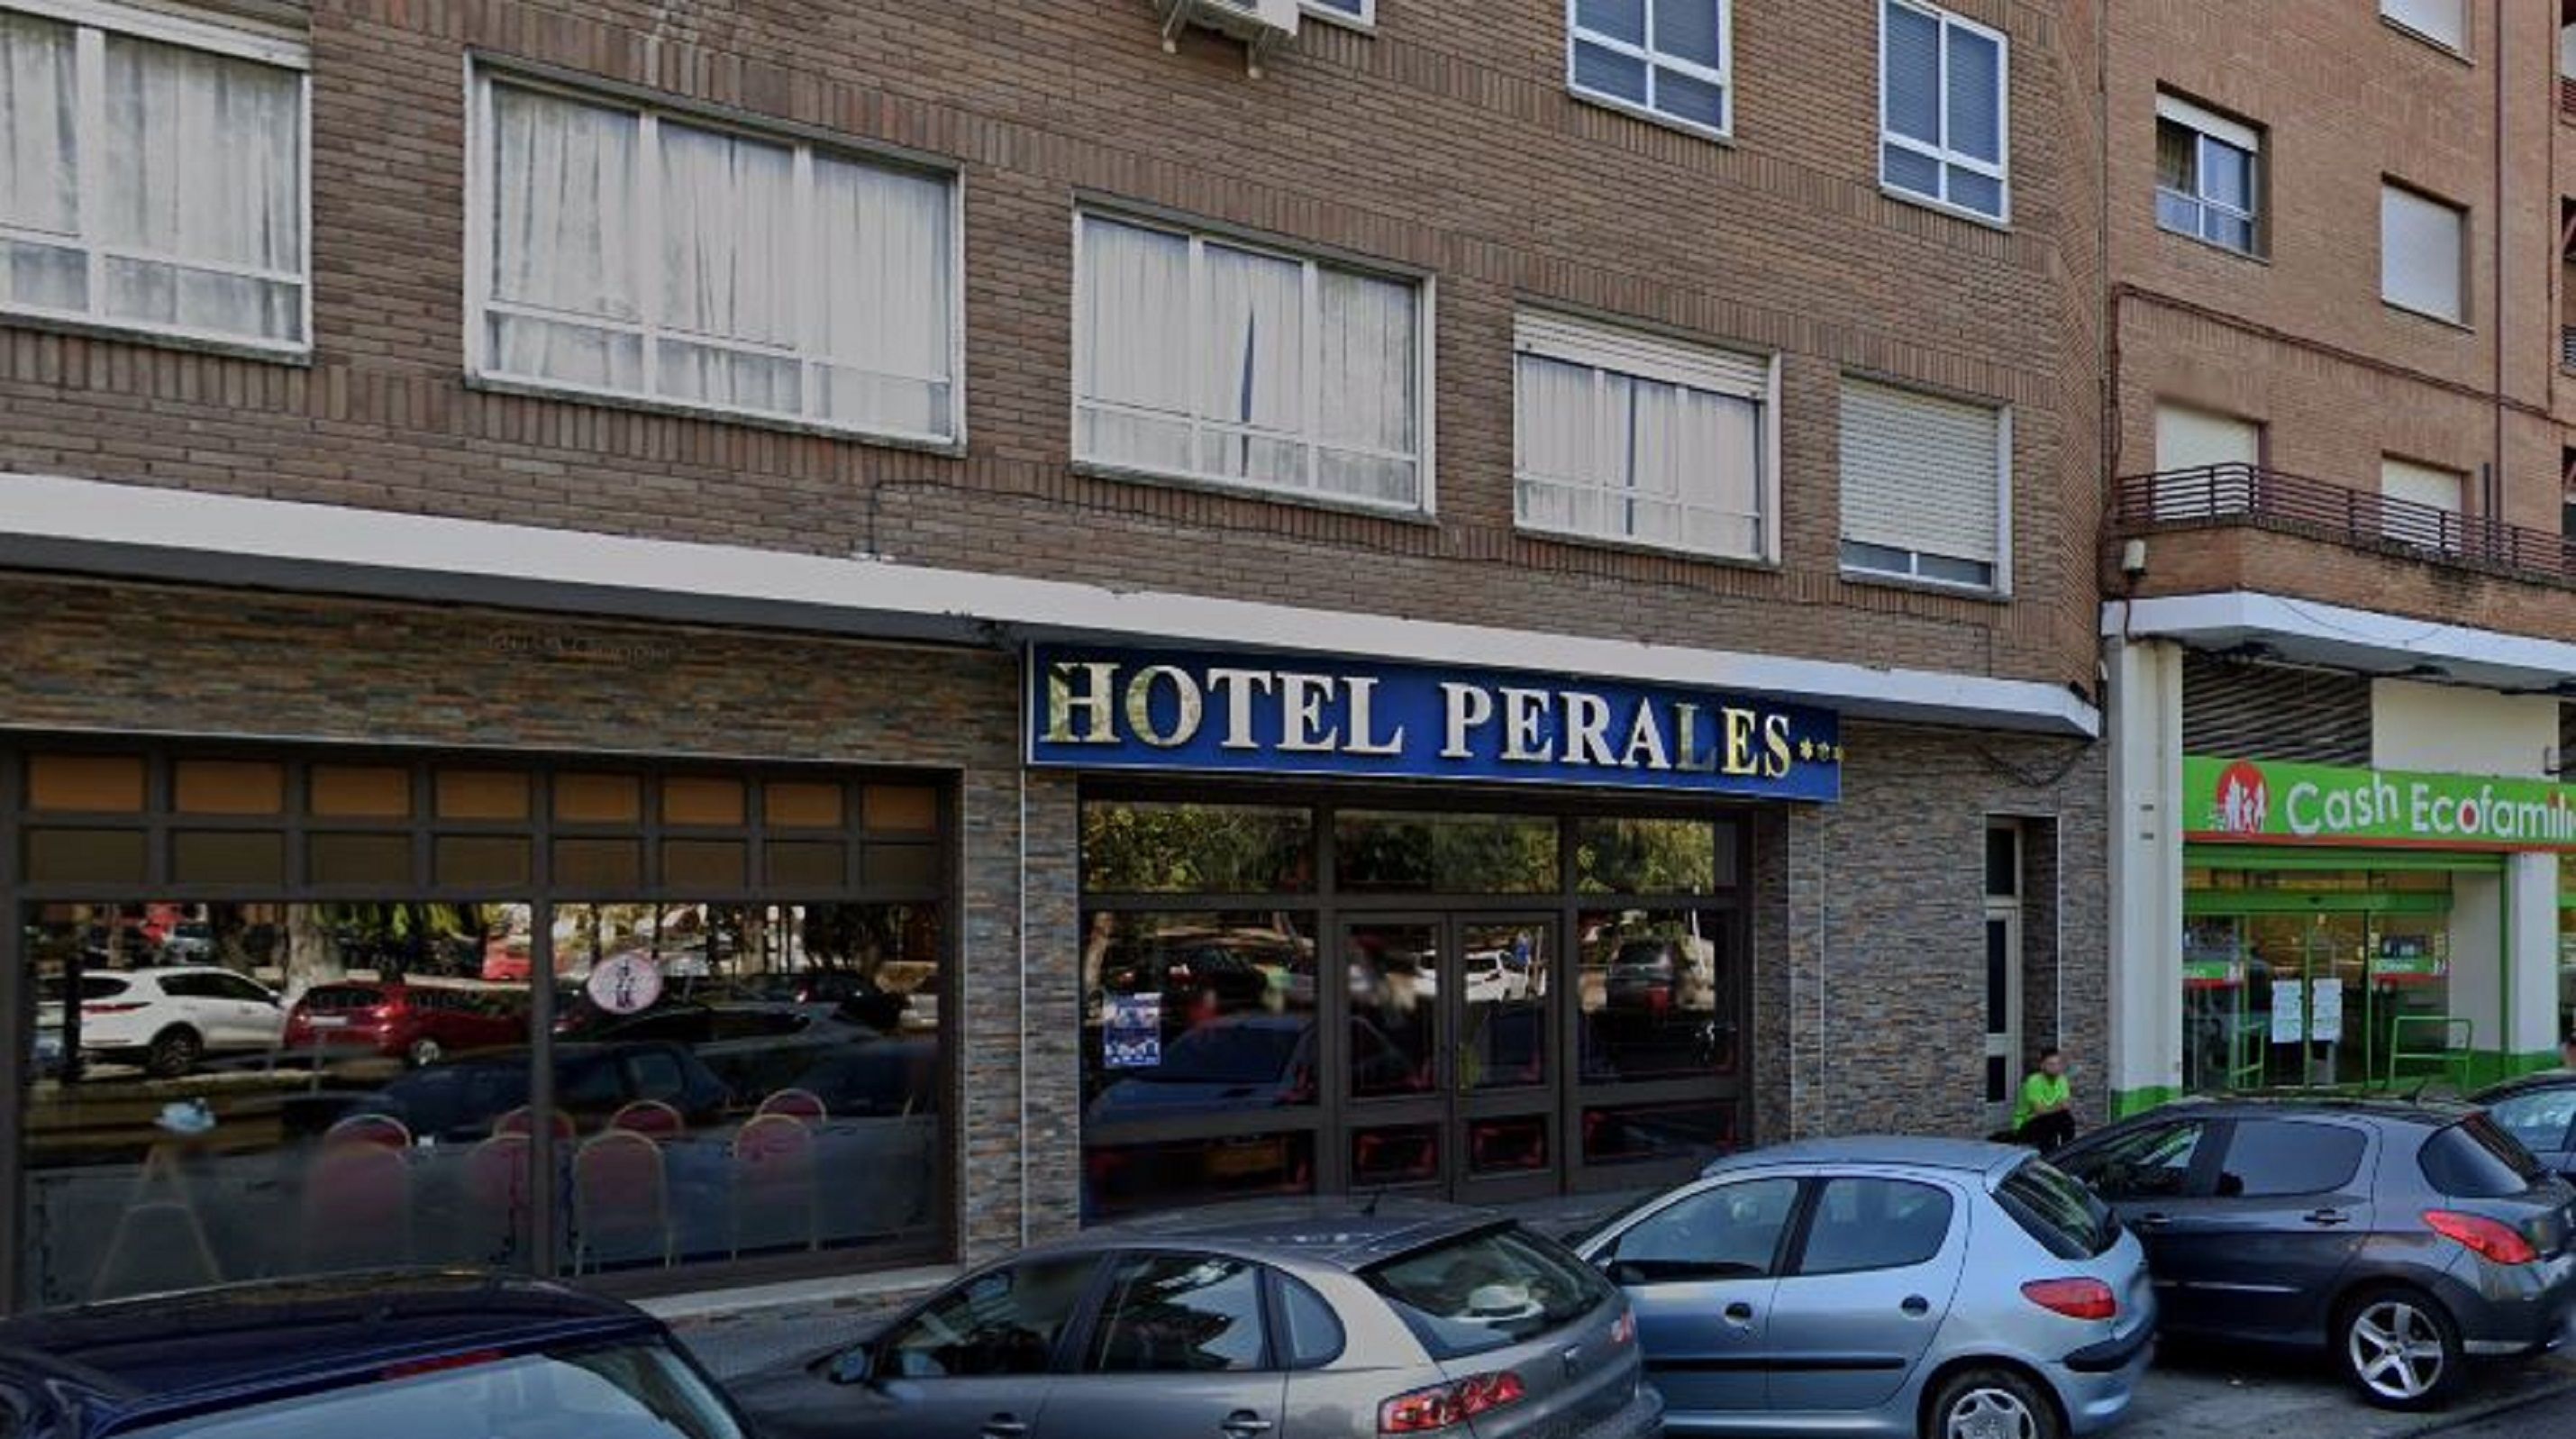 Hotel Perales Talavera de la Reina / Google Maps